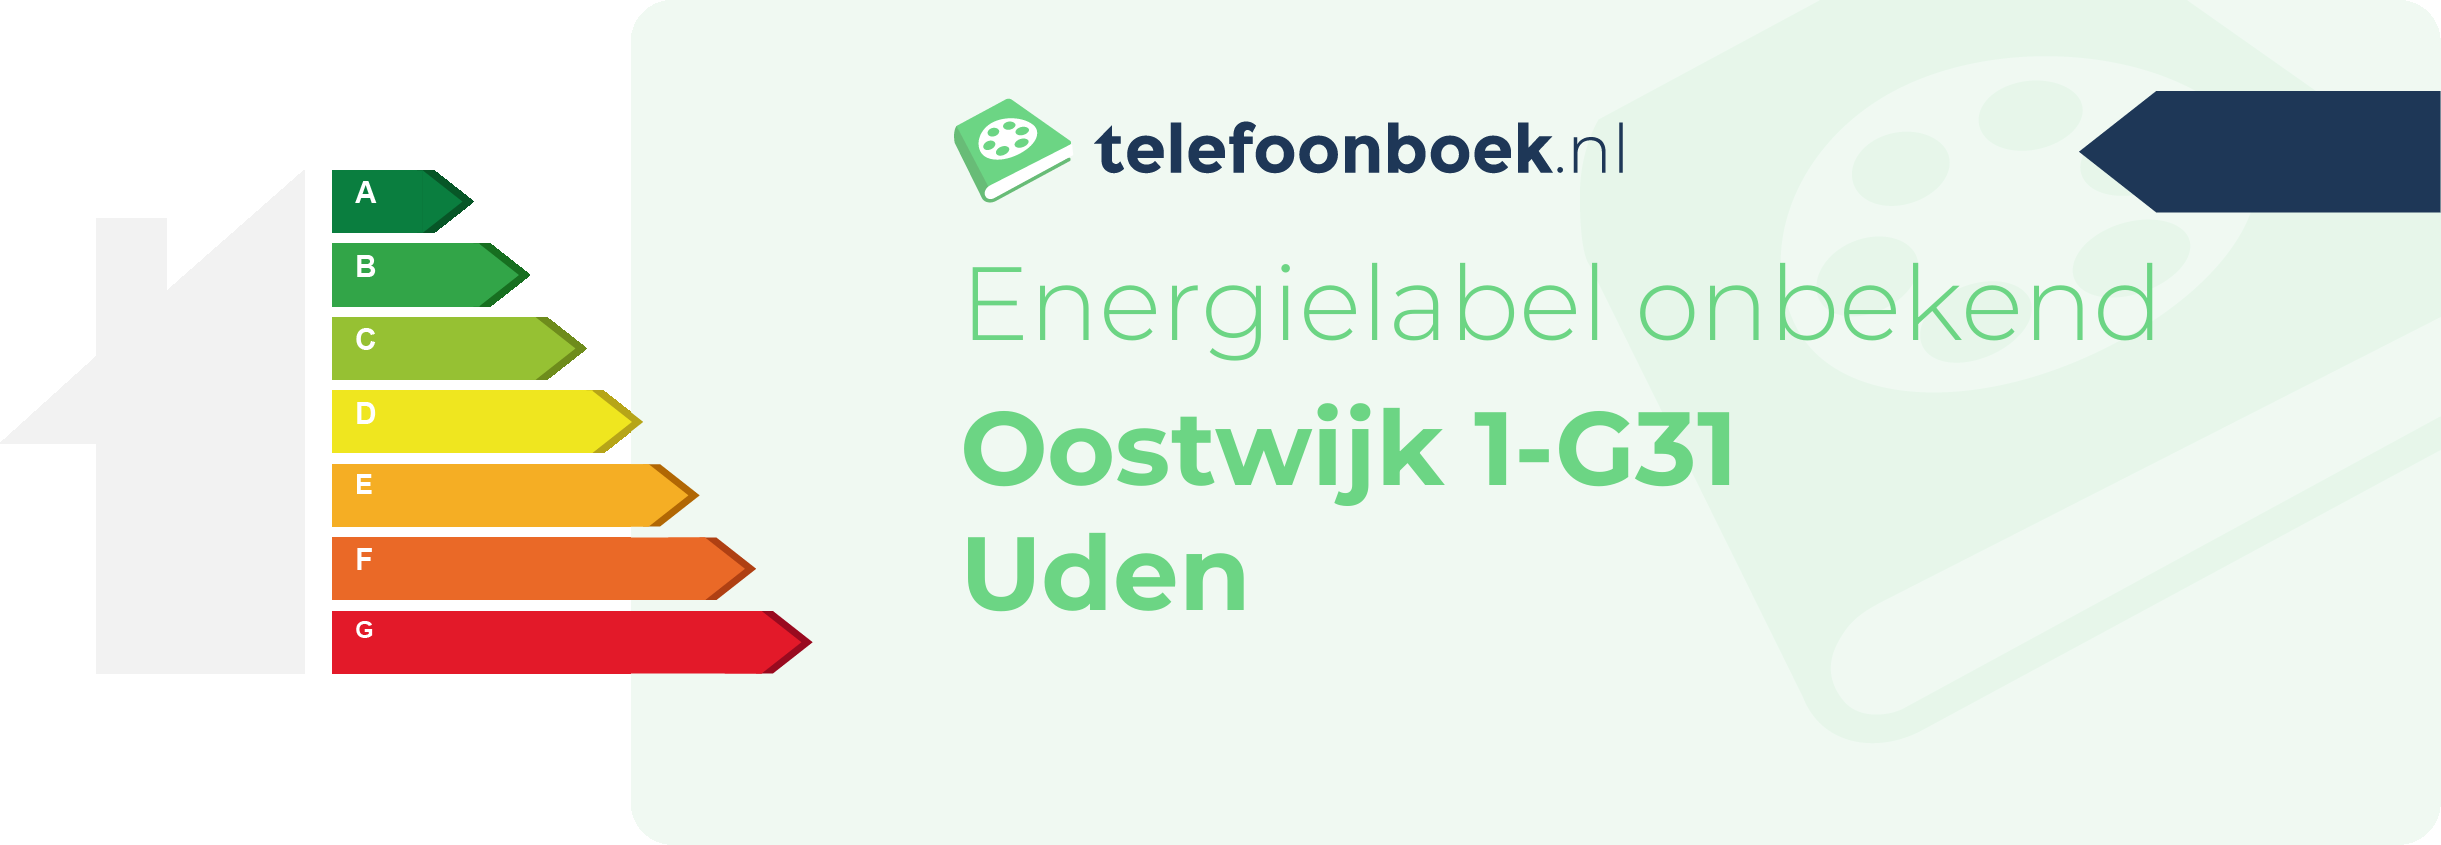 Energielabel Oostwijk 1-G31 Uden